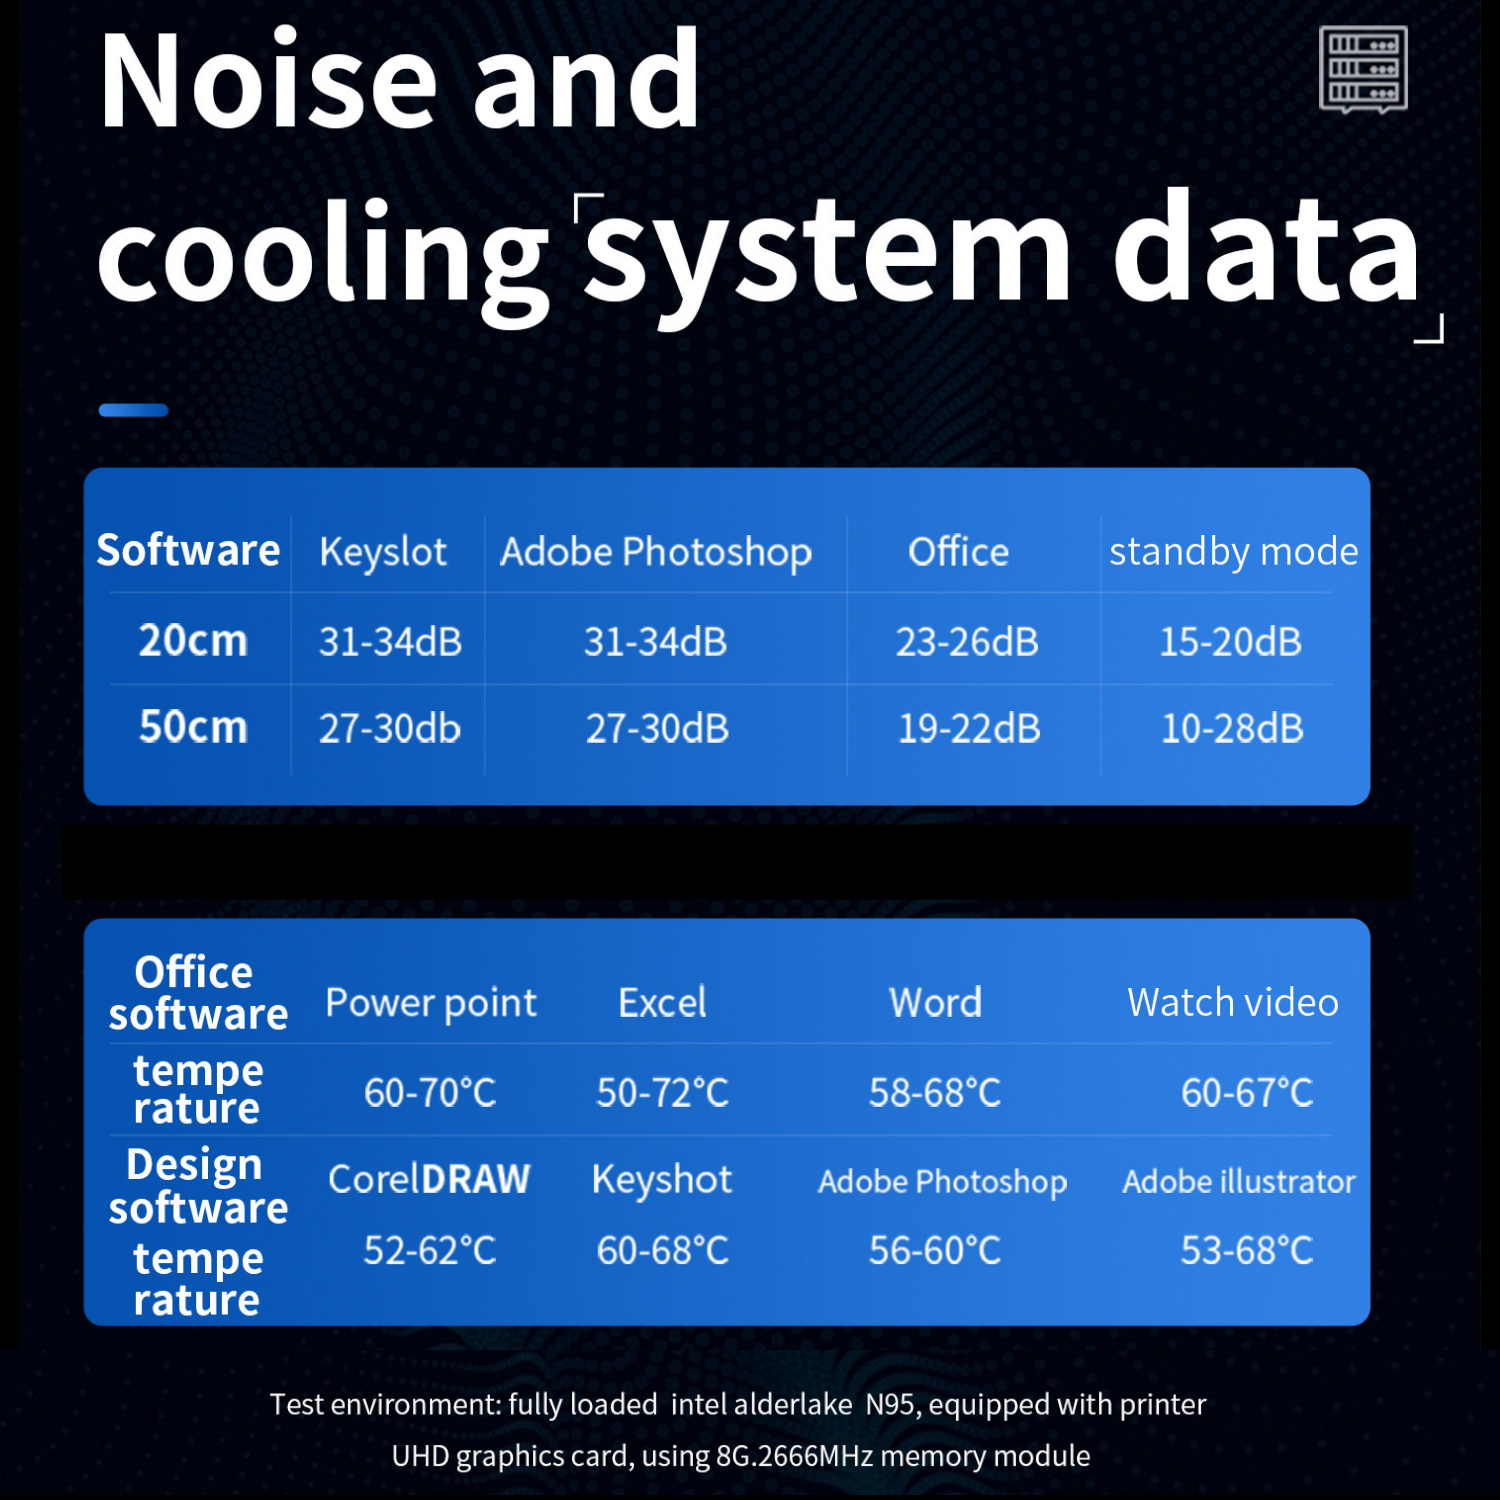 Máy tính để bàn – Máy chủ Server – Mini PC – Intel NUC N95, gen 12th 2023, up to 3.4GHz ( Hàng chính hãng